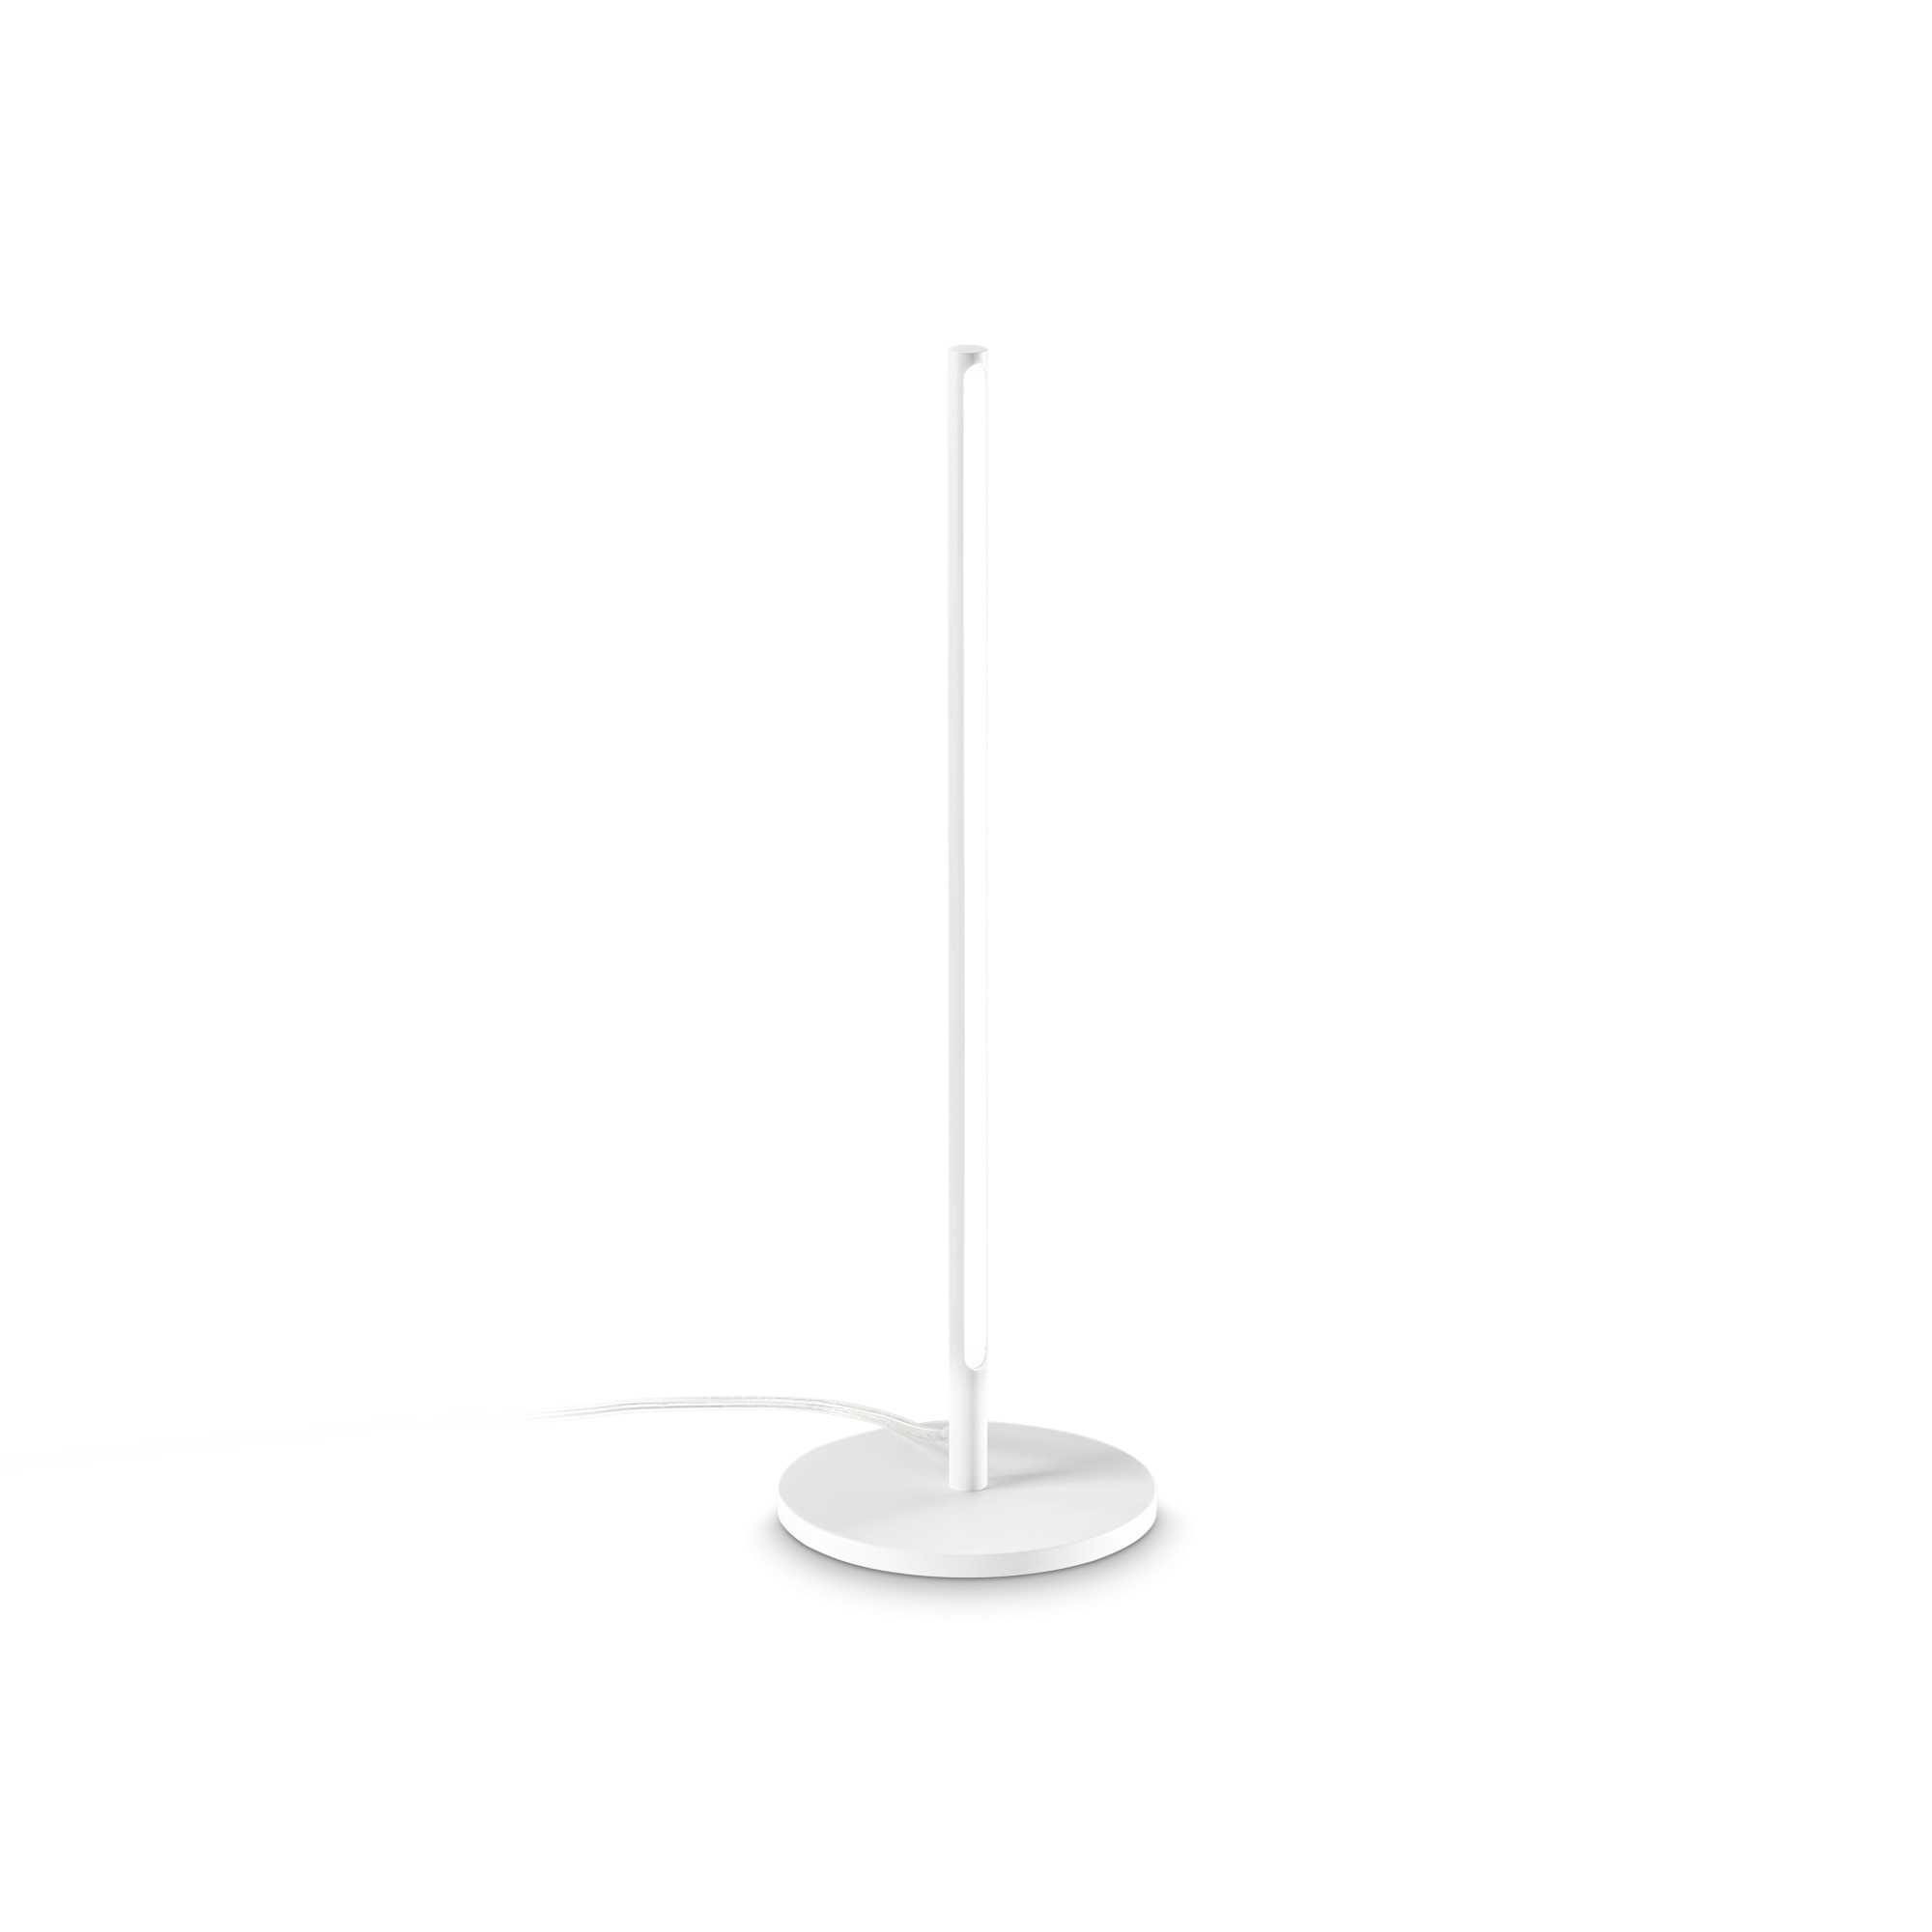 AD hotelska oprema Stolna lampa Filo tl- Bijele boje slika proizvoda